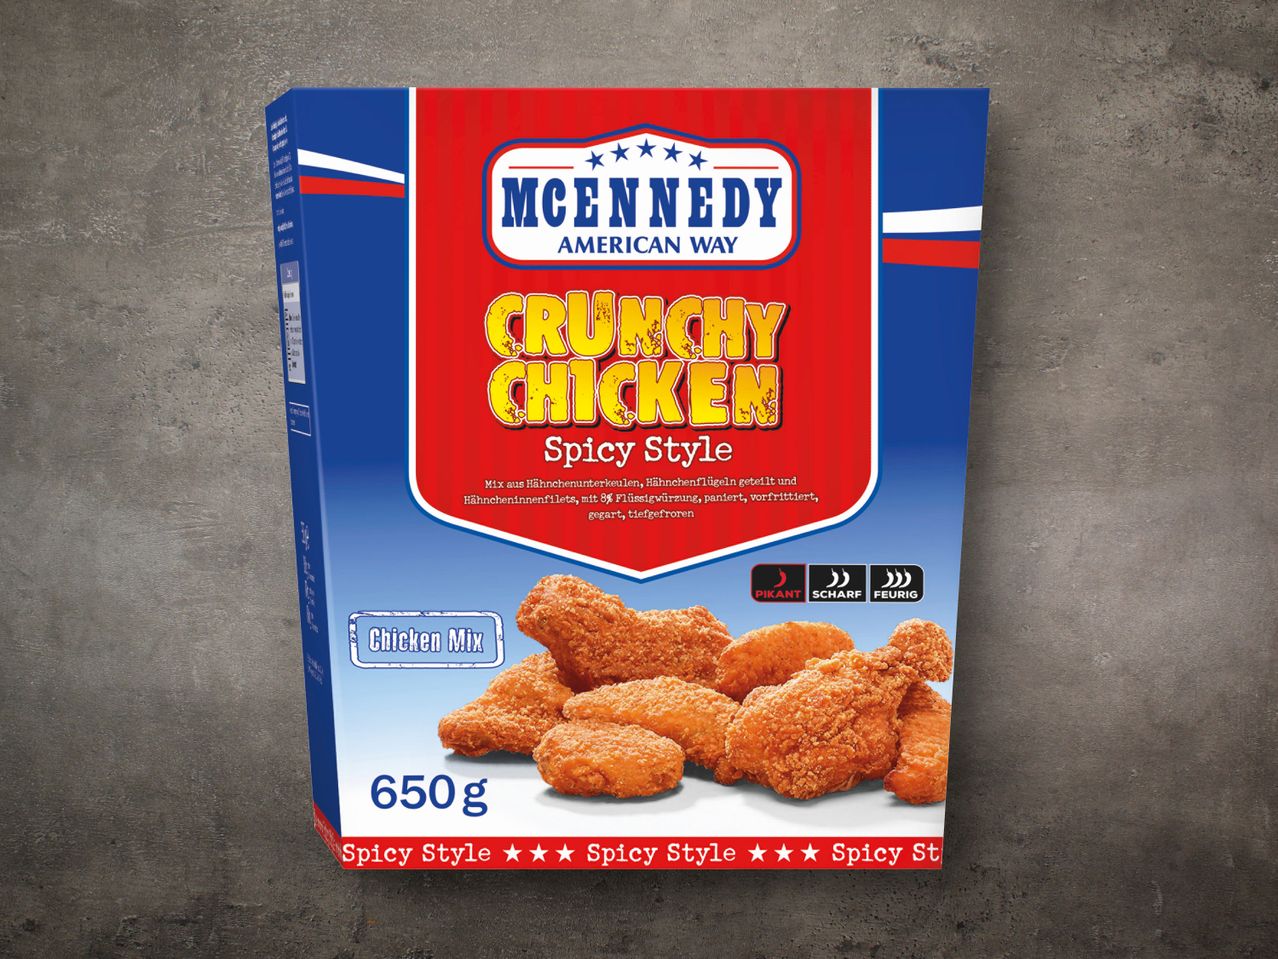 McEnnedy Crunchy Chicken Bucket | USA, ab 01.02.